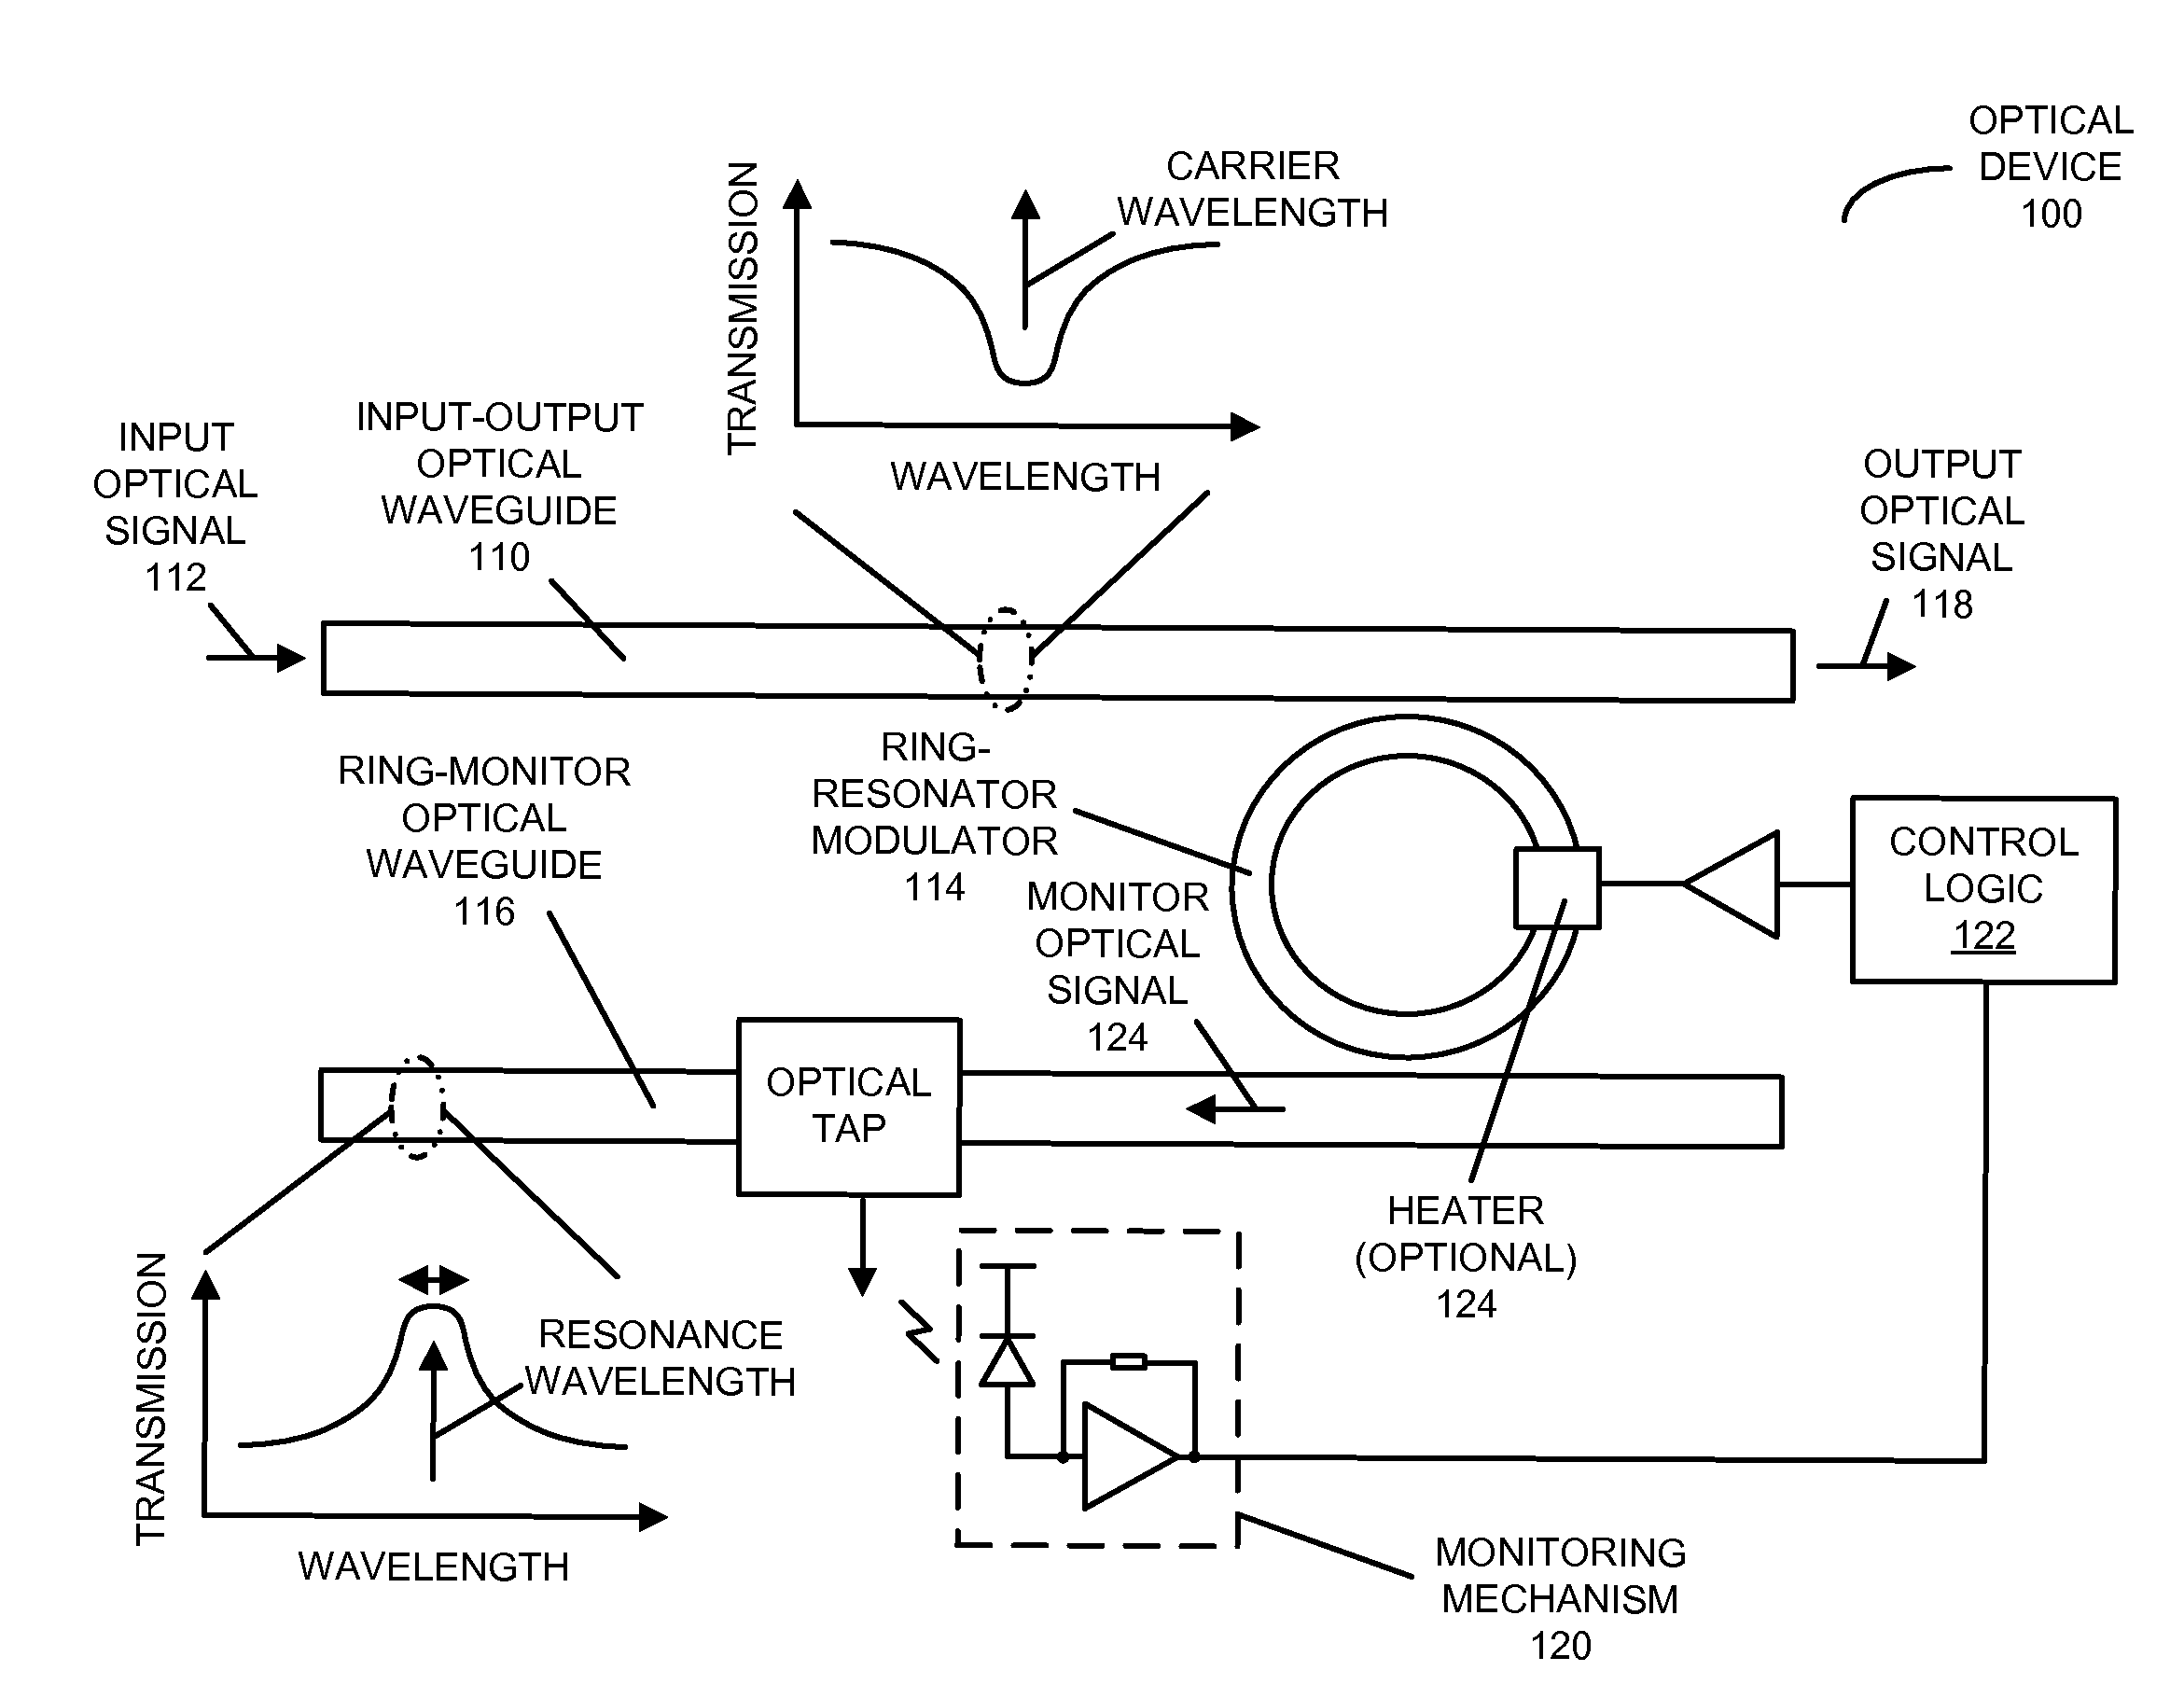 In-situ ring-resonator-modulator calibration